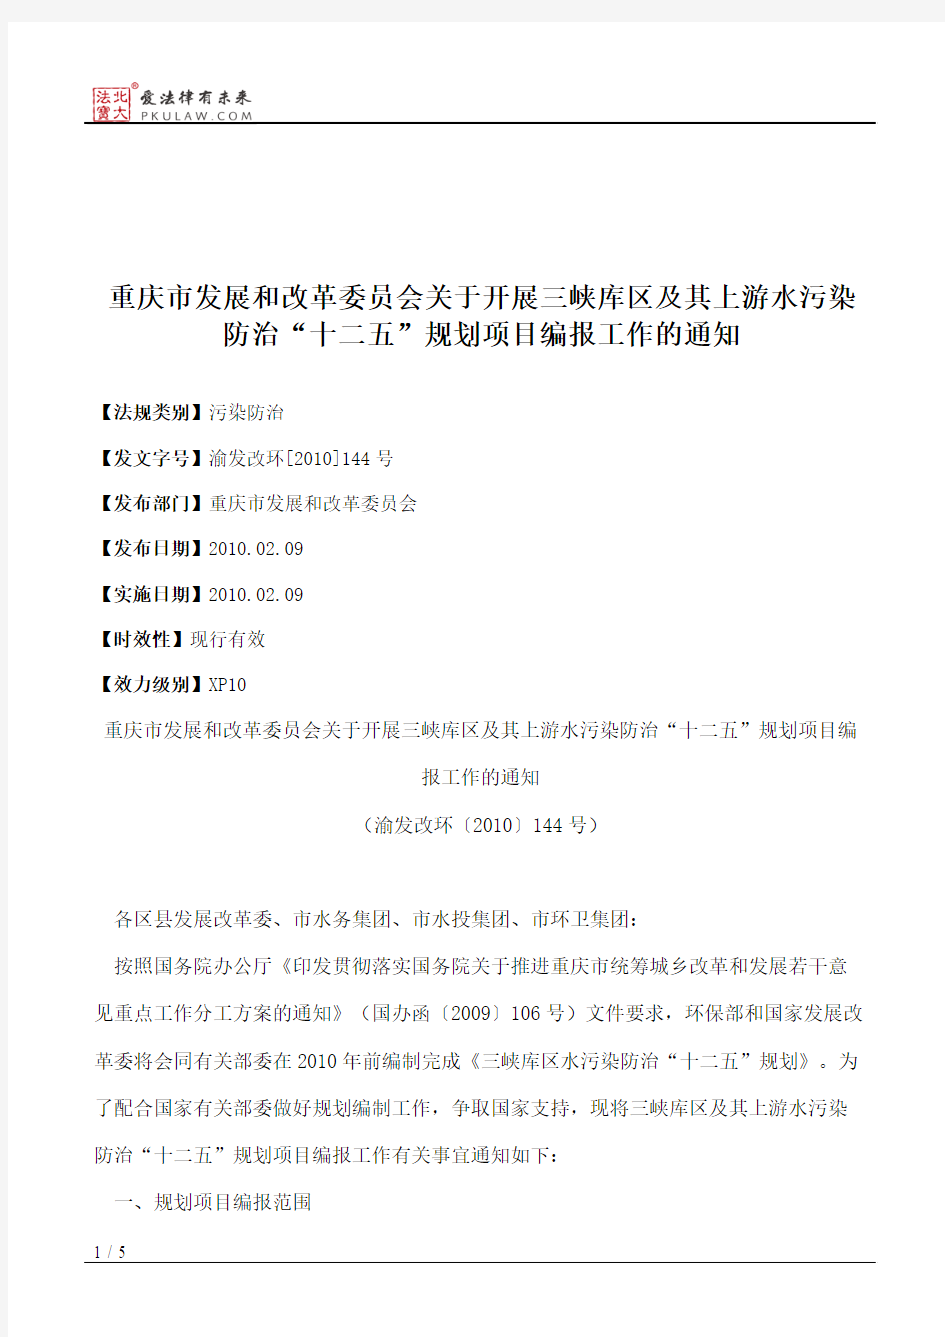 重庆市发展和改革委员会关于开展三峡库区及其上游水污染防治“十